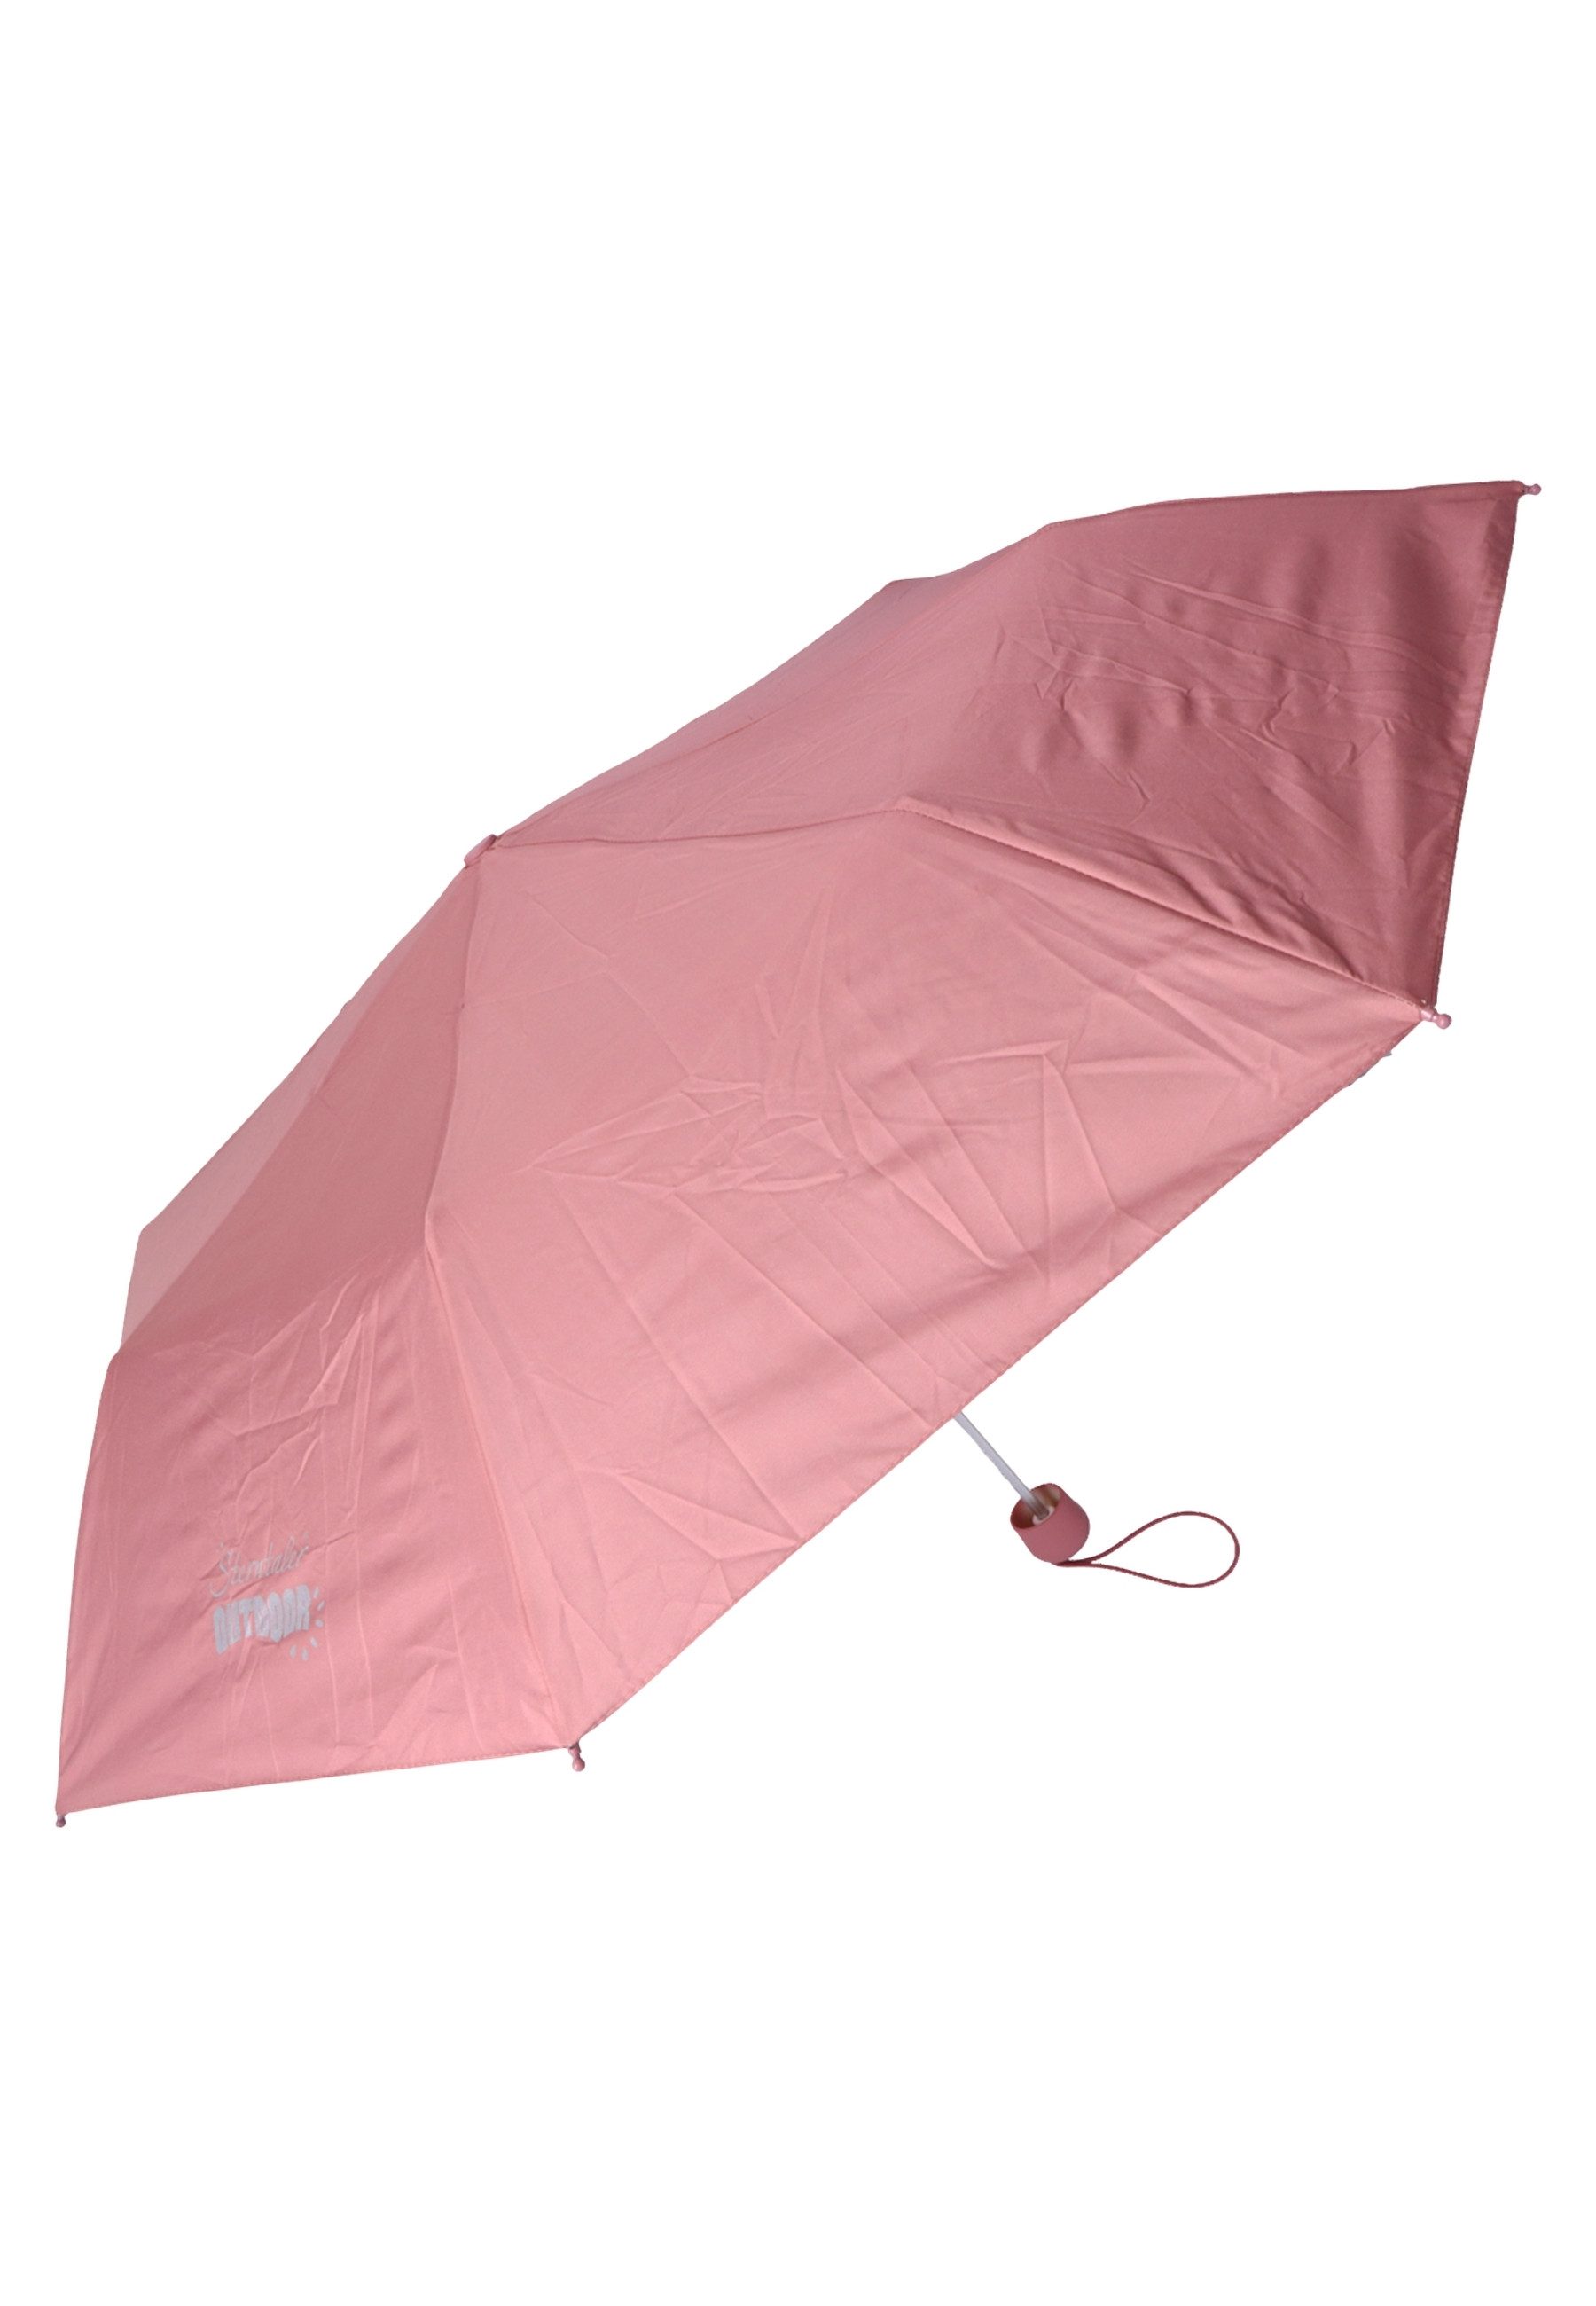 Sterntaler® Stockregenschirm Taschenschirm uni